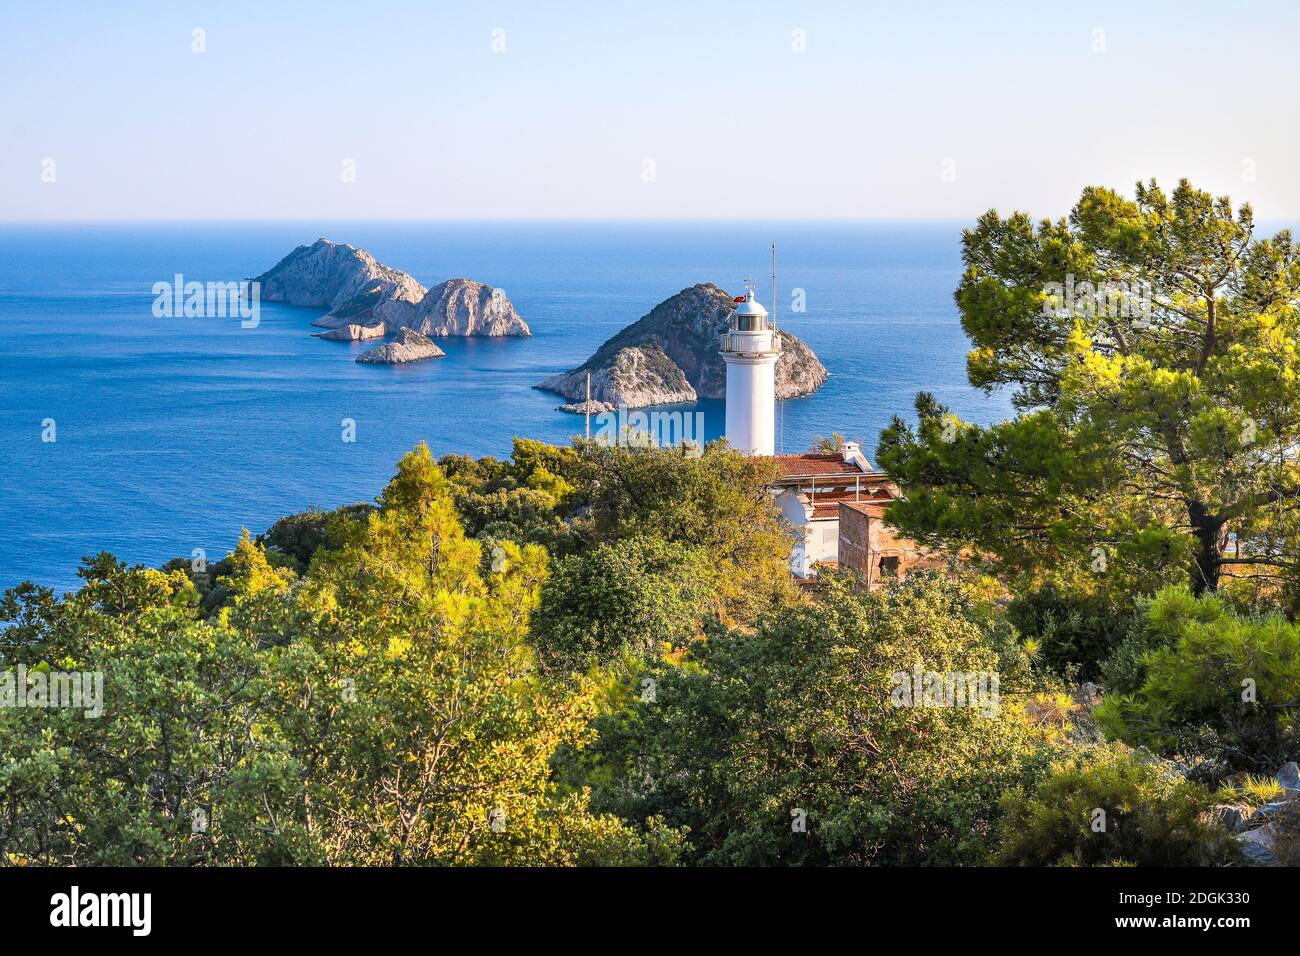 Le phare de Gelidonya à Karaoz, Antalya, Turquie face à la mer Méditerranée et trois îles sur la voie lycienne. Banque D'Images